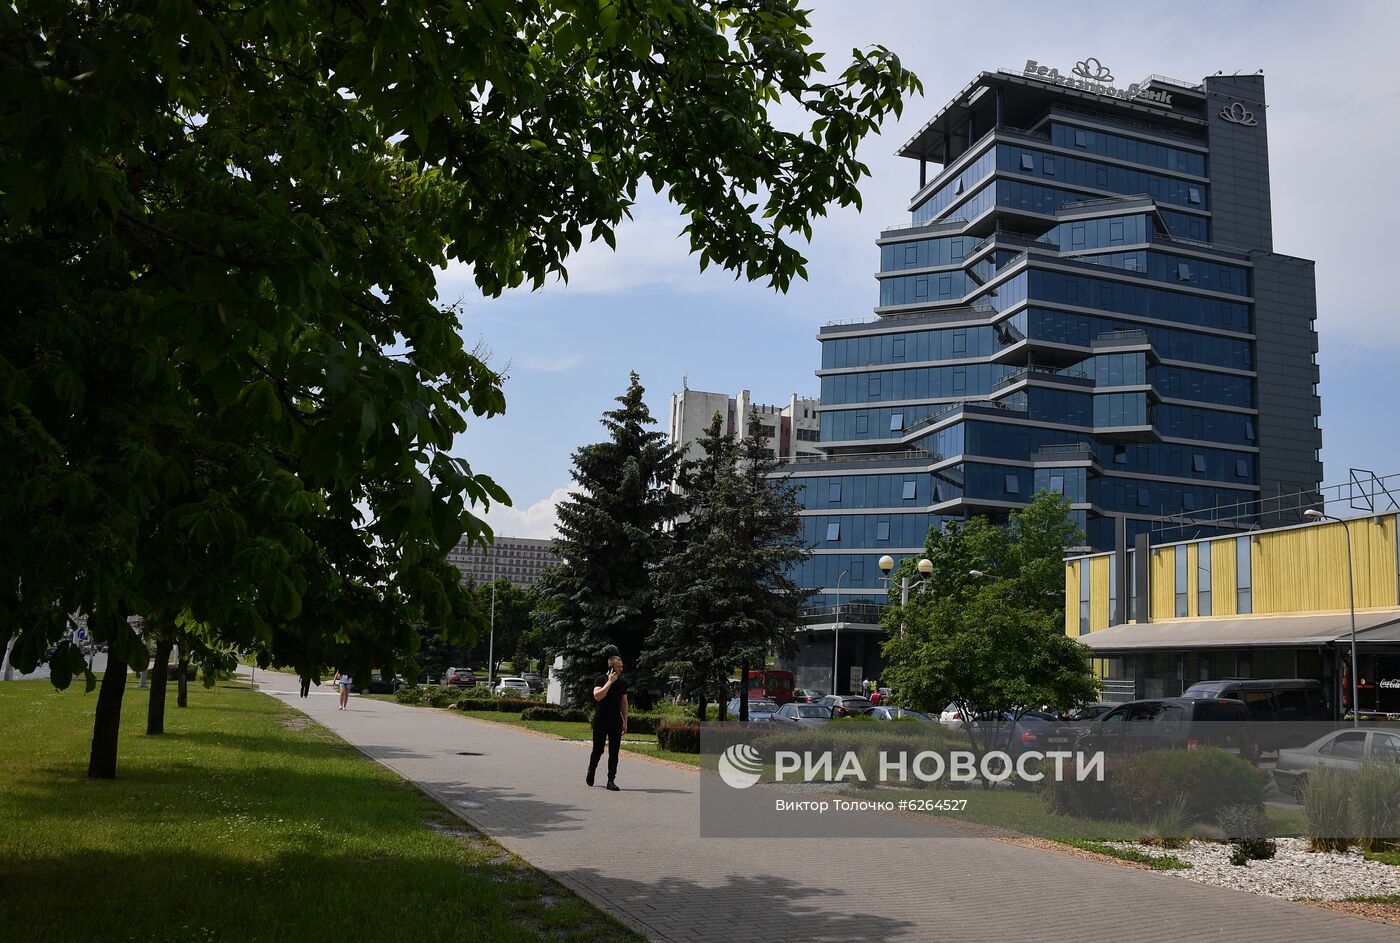 Головной офис Белгазпромбанка в Минске